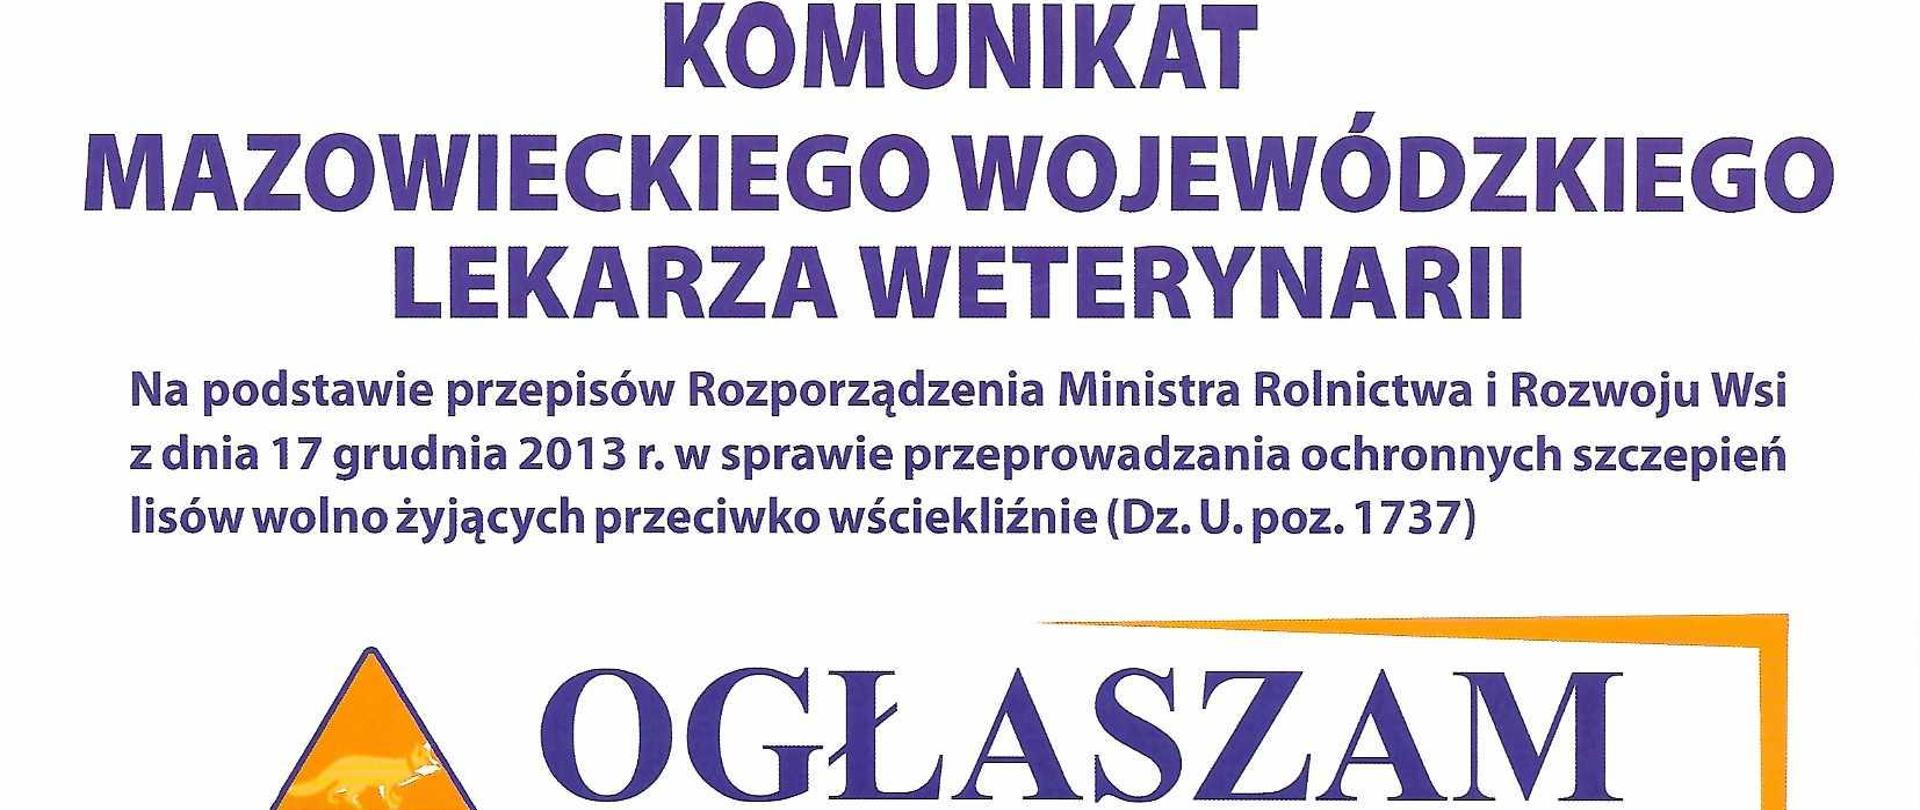 Plakat - ogłoszenie Mazowieckiego Wojewódzkiego Lekarza Weterynarii dotyczący zaplanowanej akcji szczepień lisów wolno żyjących przeciwko wściekliźnie na terenie województwa mazowieckiego. Akcja zaplanowana jest w dniach 01 - 13.04.2022 r. 